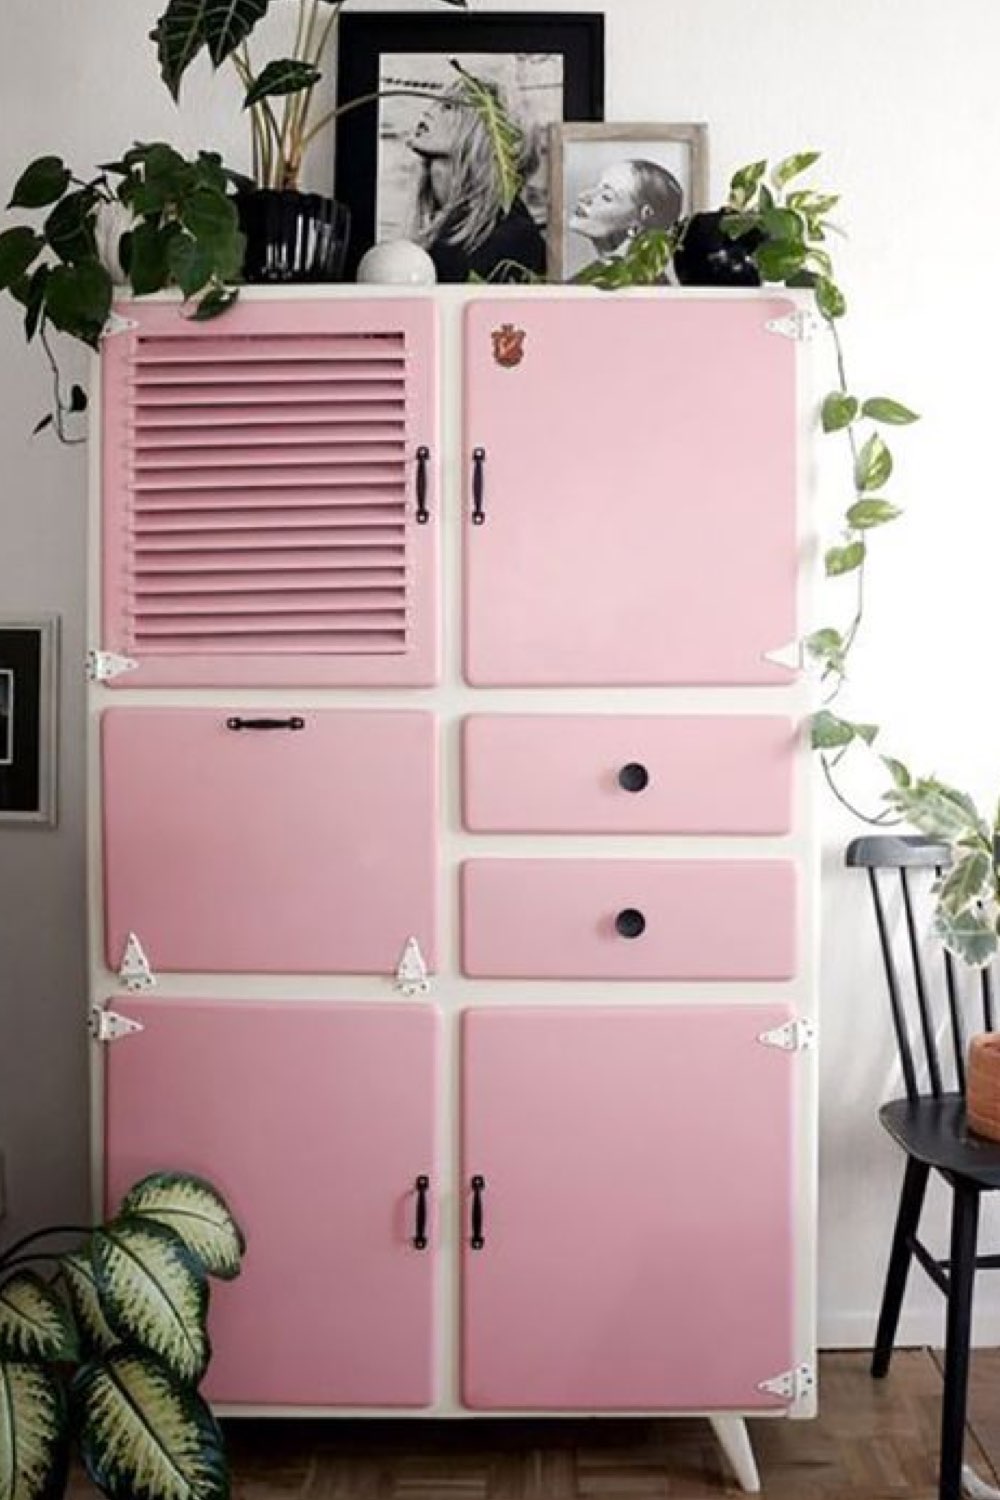 deco touche couleur relooking meuble récup' ancien vintage rangement peinture rose et blanc plantes vertes fraîcheur